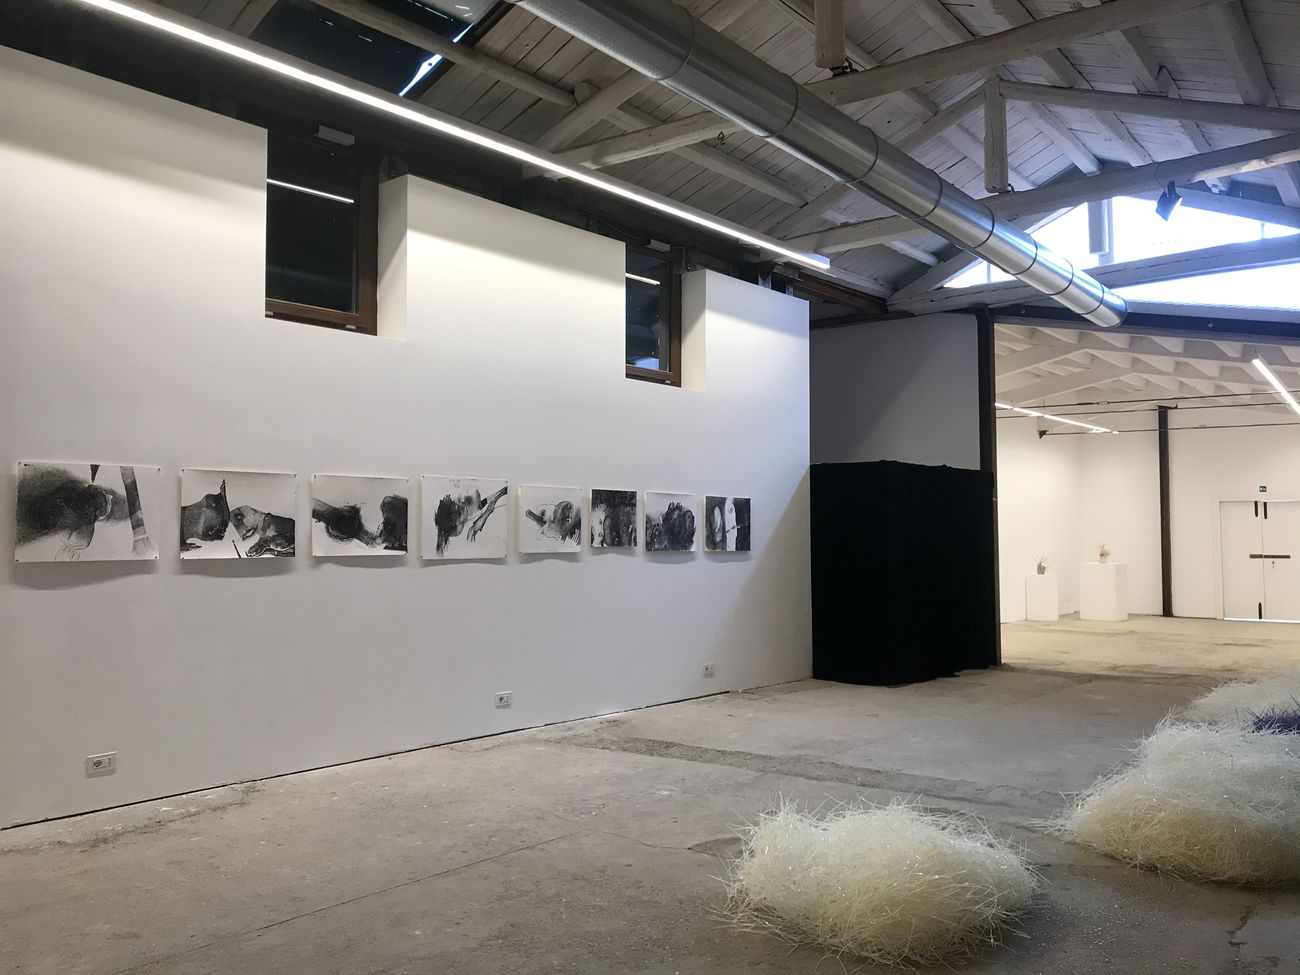 Share Happiness. Omaggio a Frankenstein. Installation view at Galleria Alberta Pane, Venezia 2020